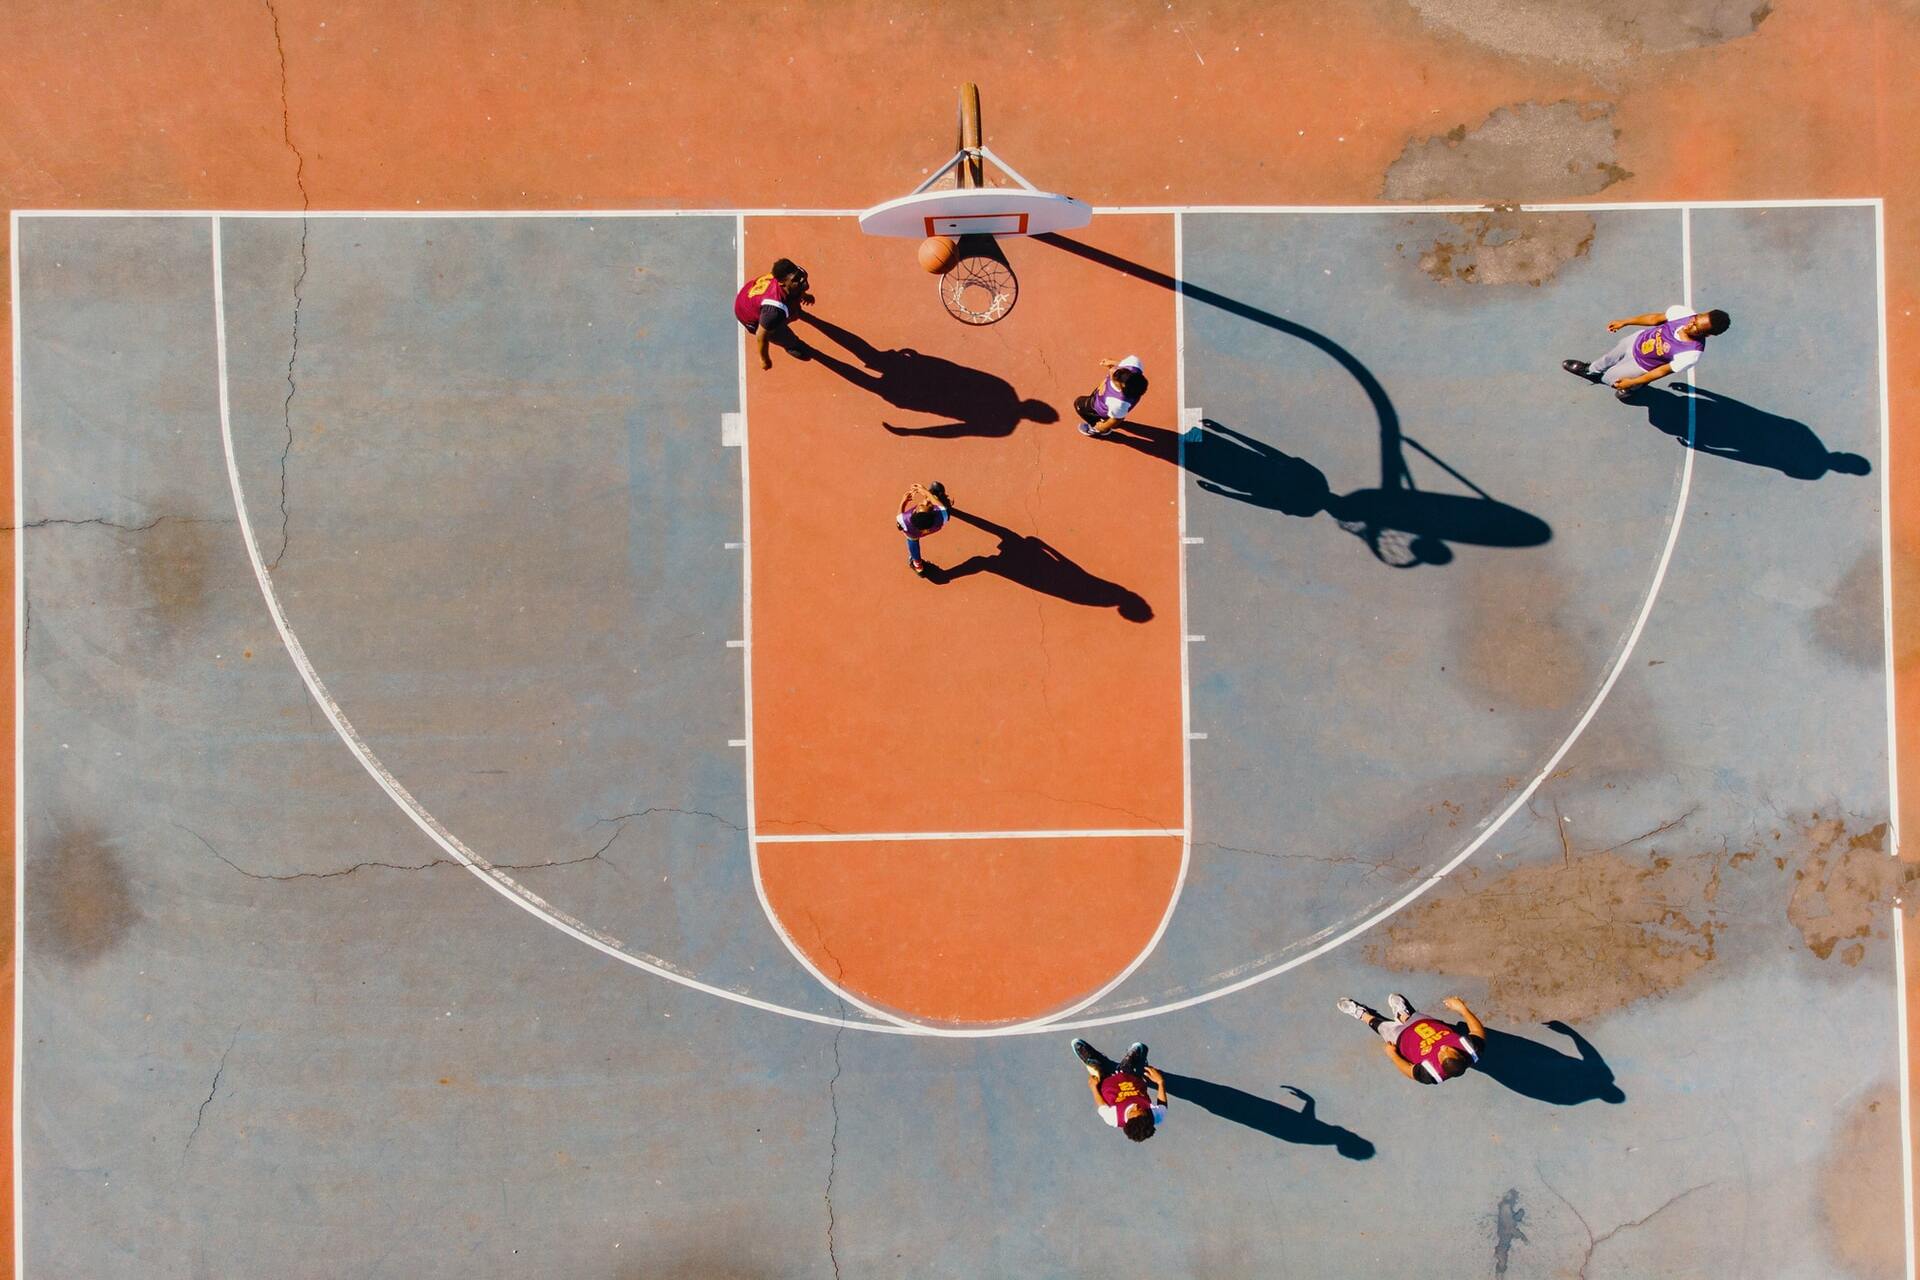 ensino-de-basquete-assimilacao-de-regras-e-desempenho